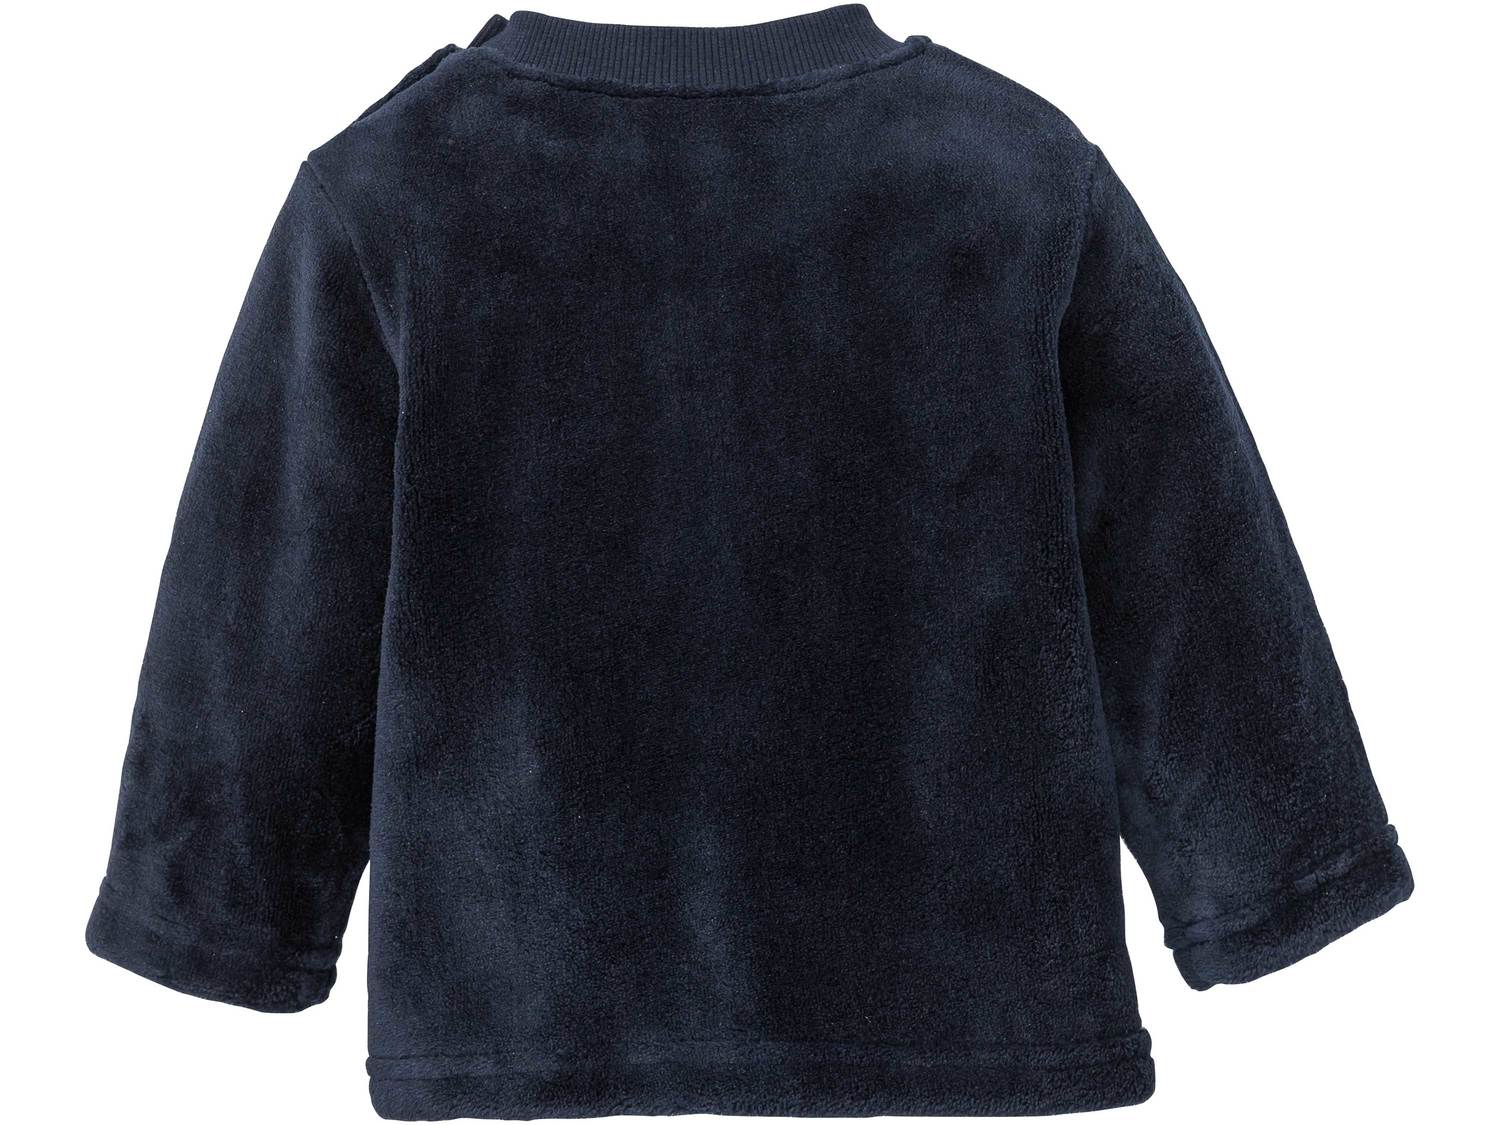 Bluza polarowa Lupilu, cena 22,99 PLN 
- z miękkiego, przytulnego polaru
- zapięcie ...